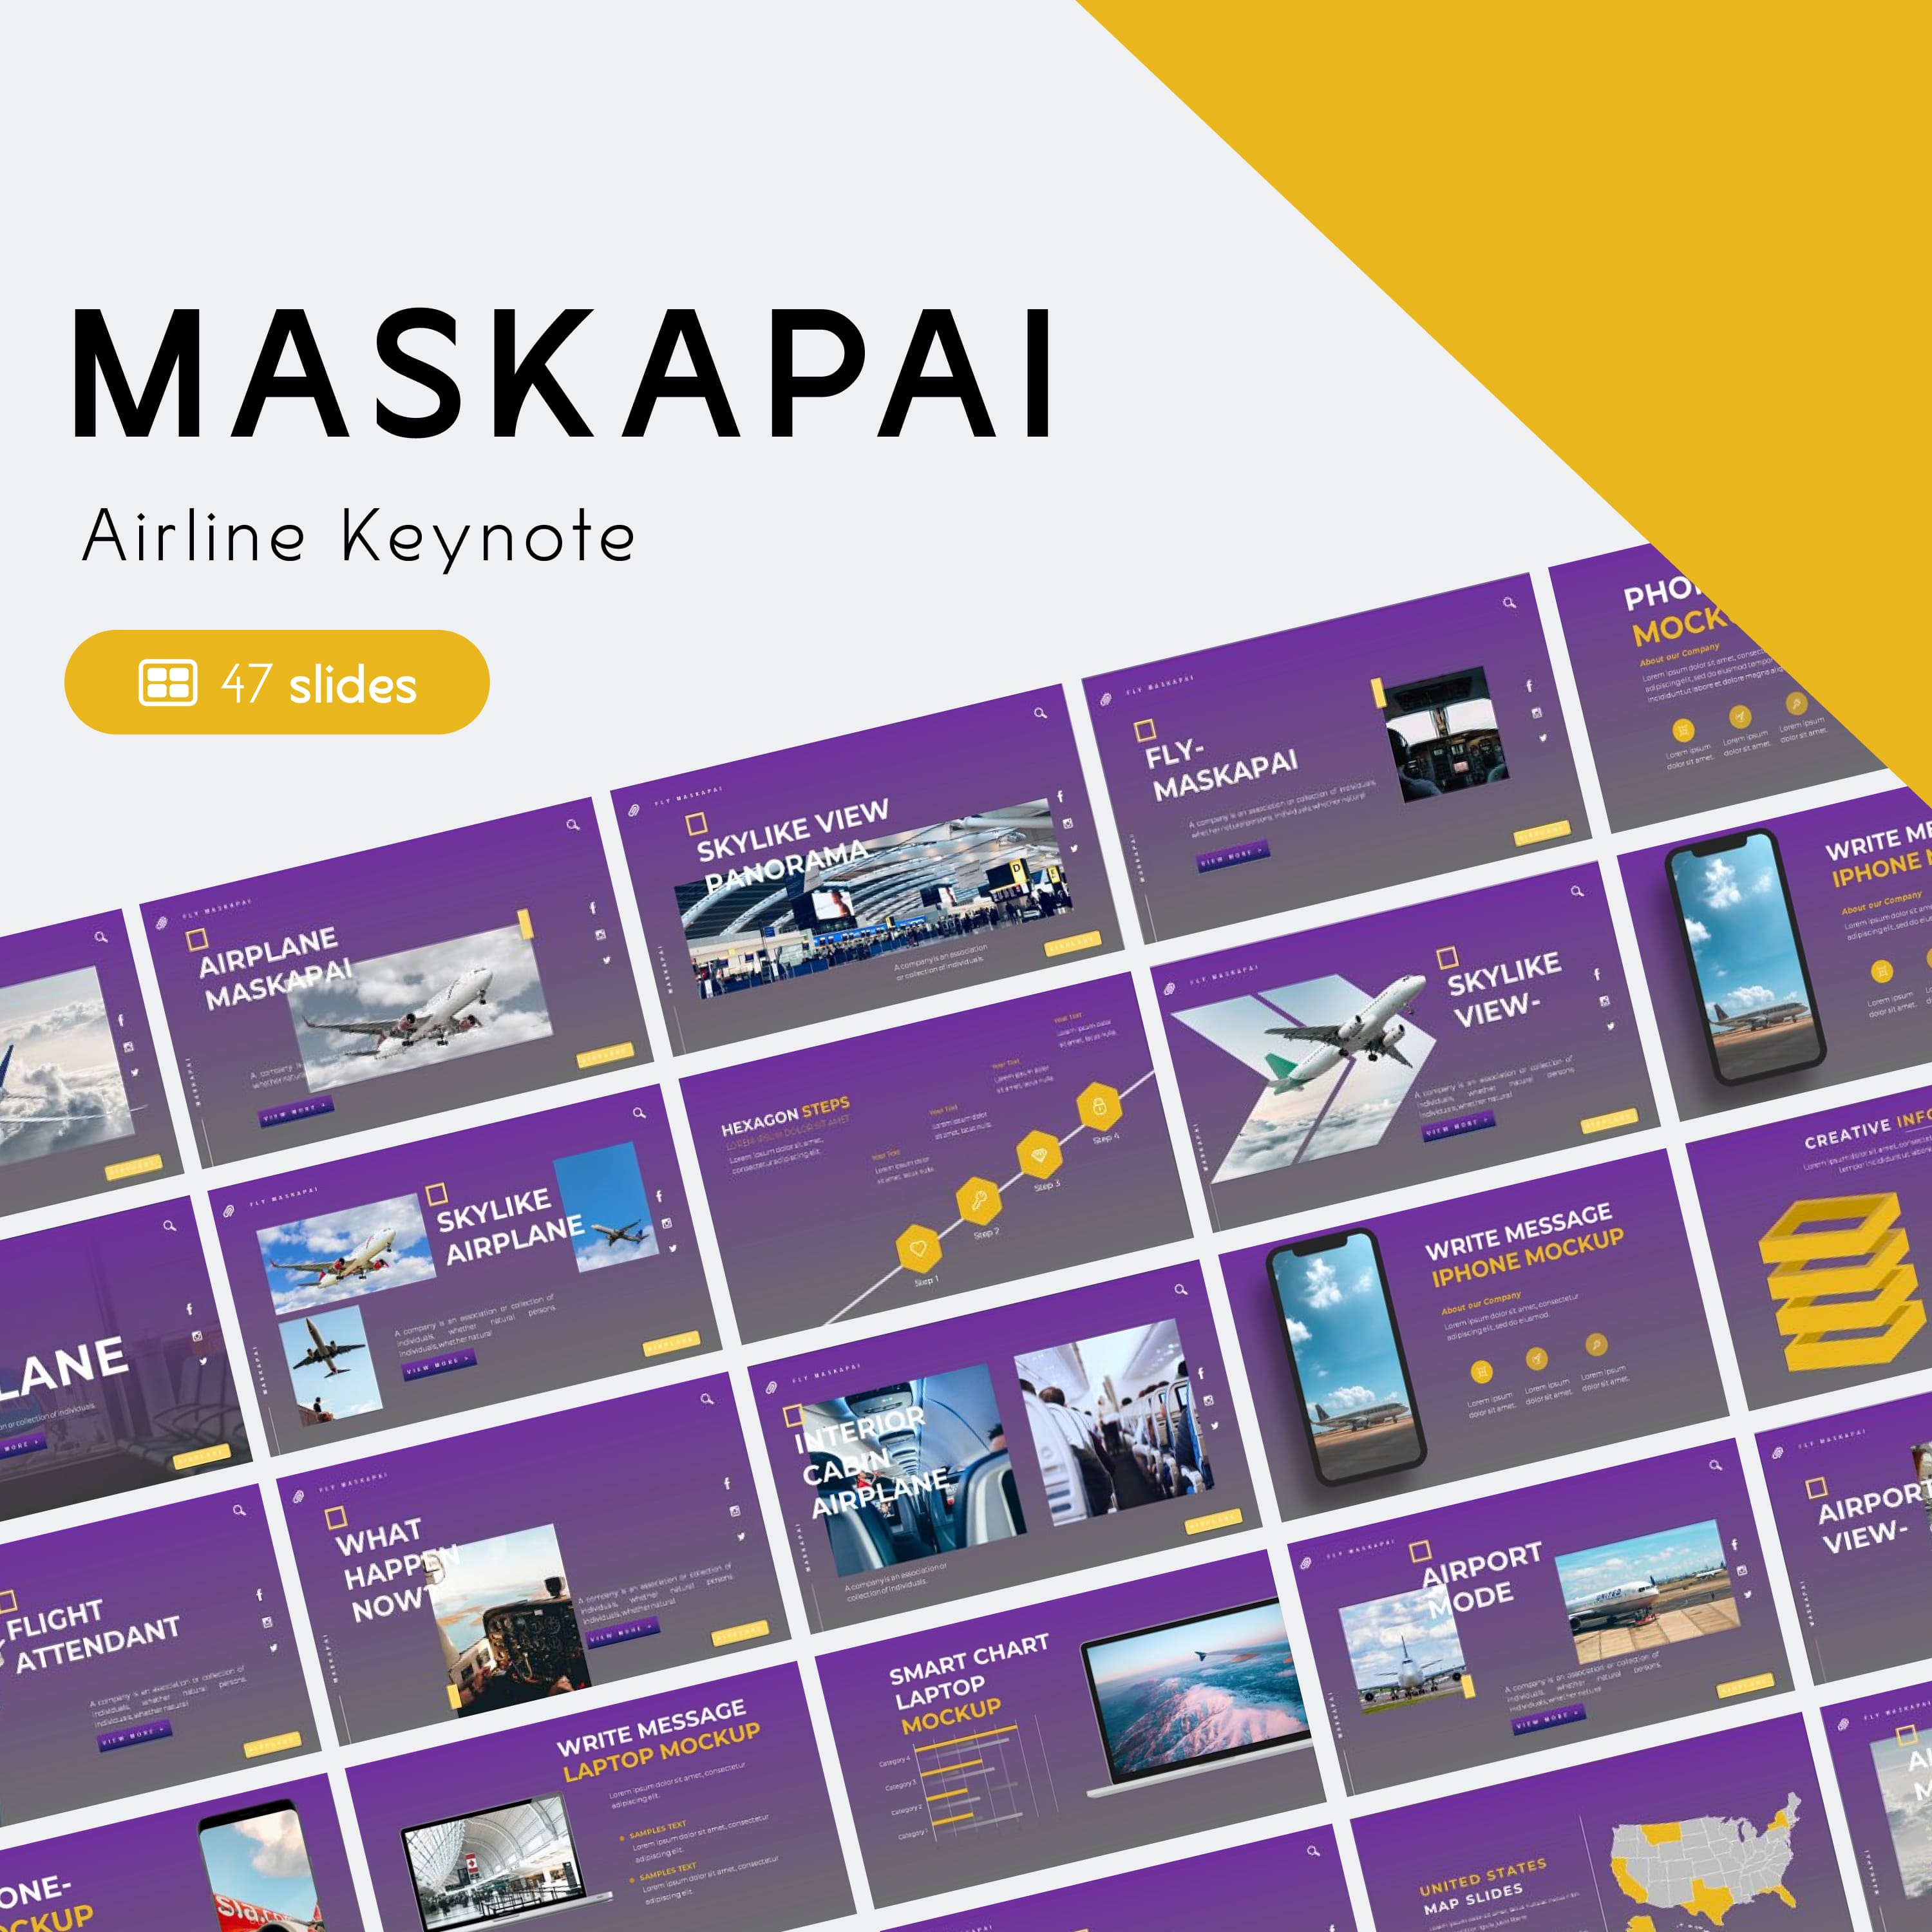 Maskapai airline keynote - main image preview.